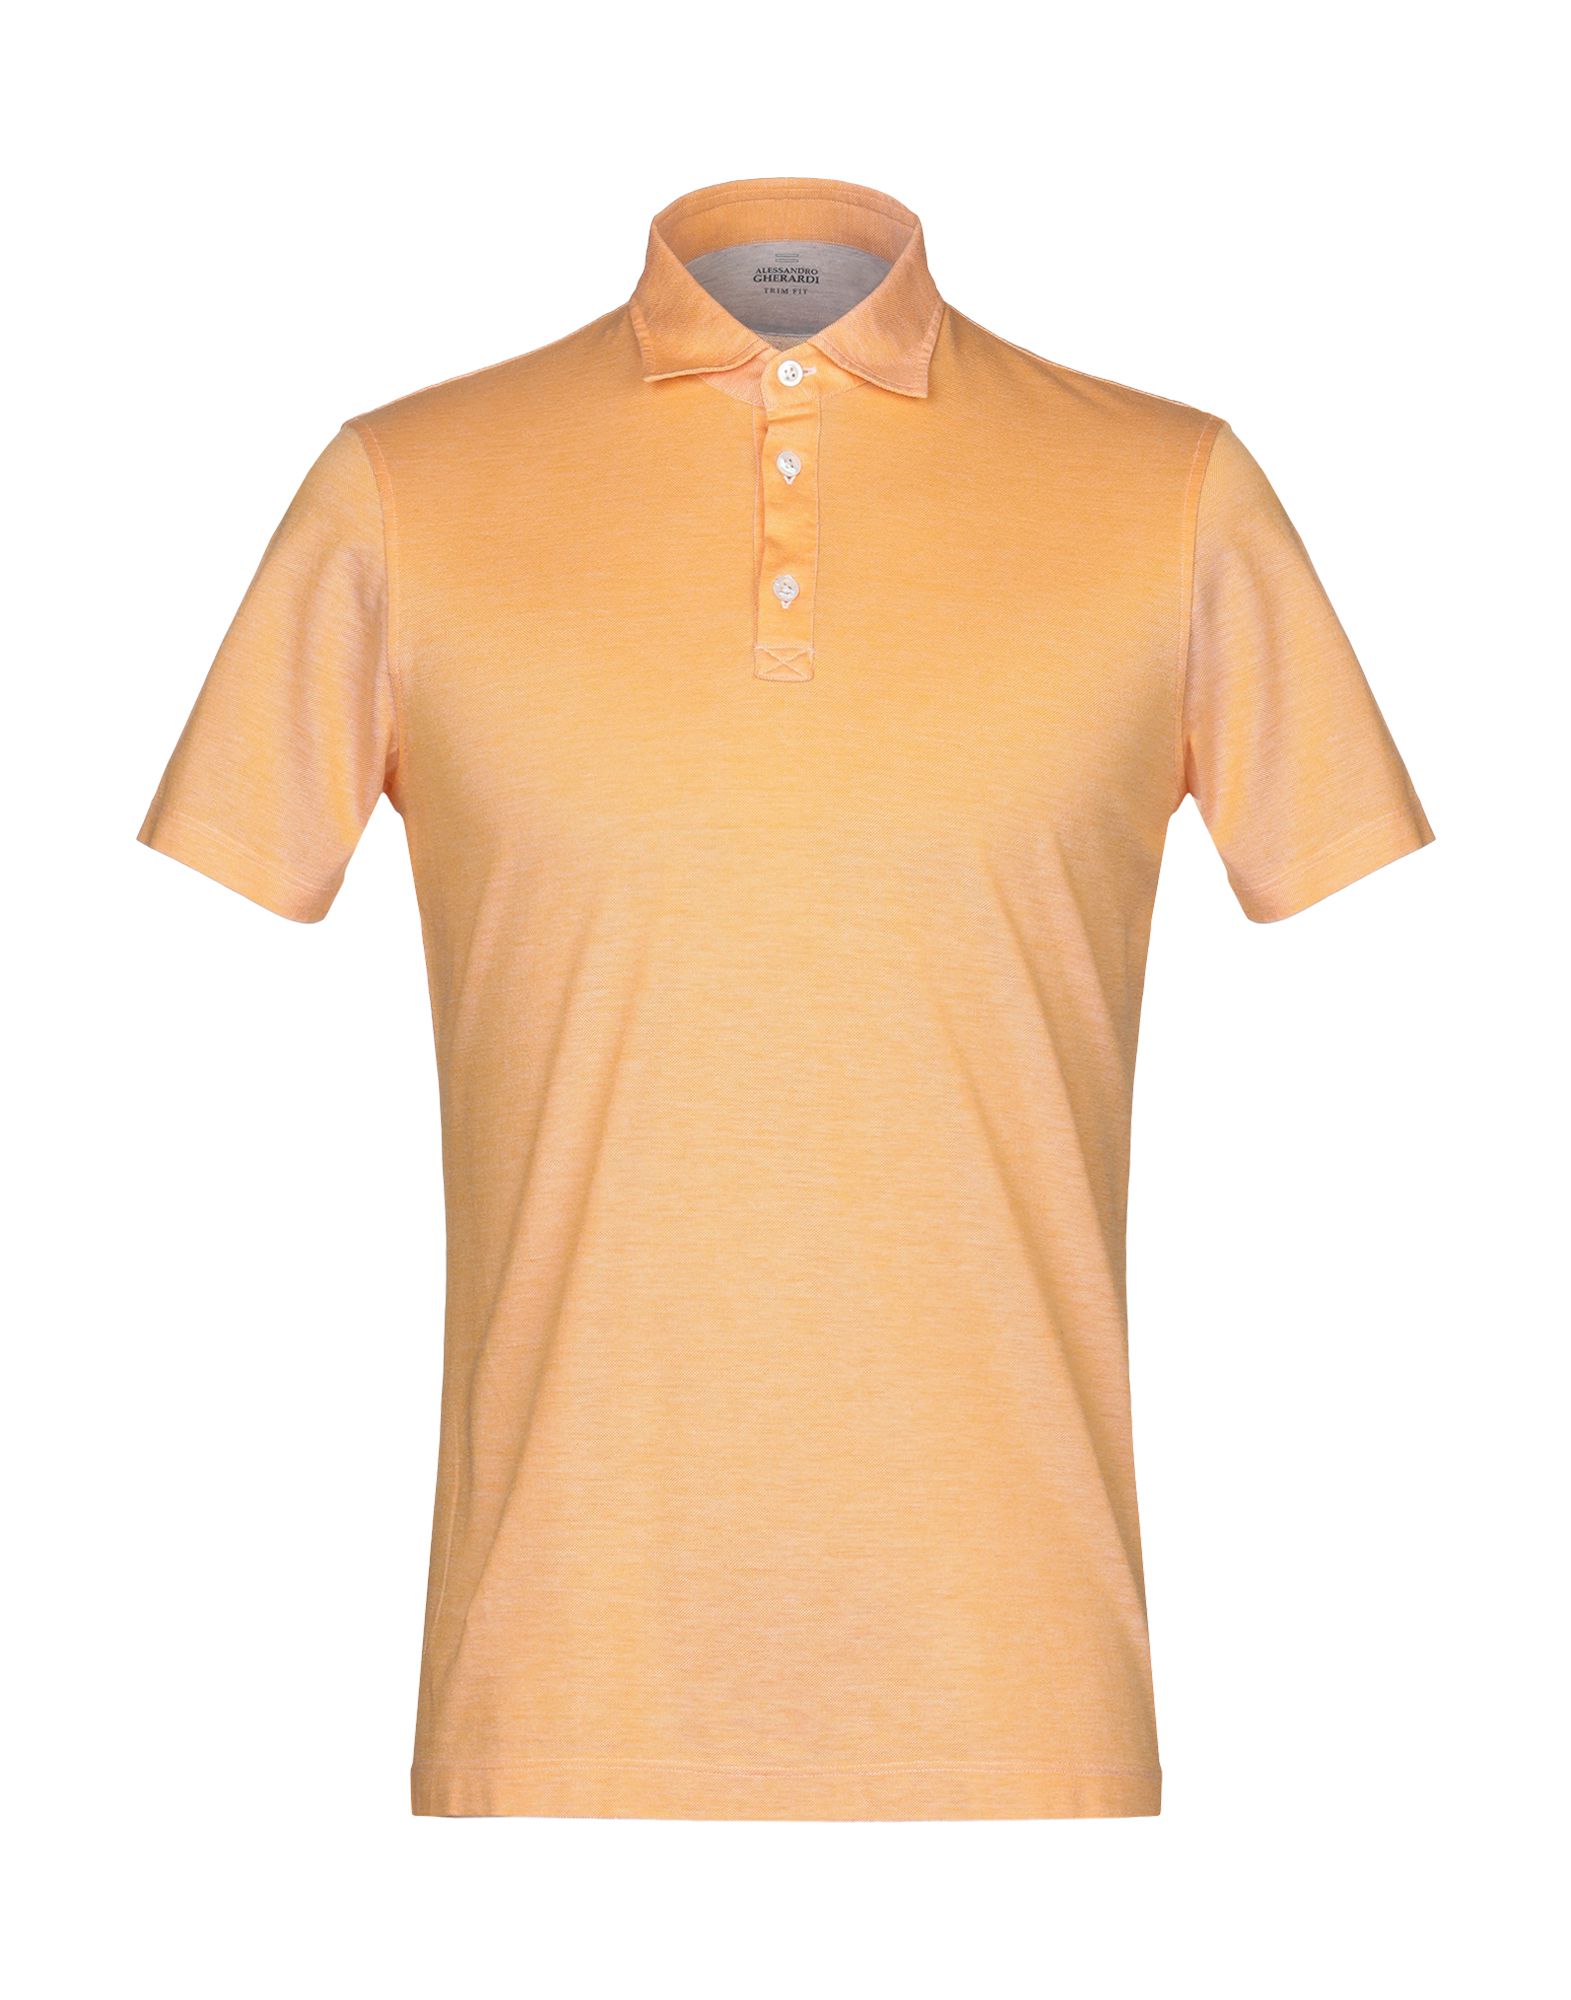 《送料無料》ALESSANDRO GHERARDI メンズ ポロシャツ オレンジ S コットン 100%